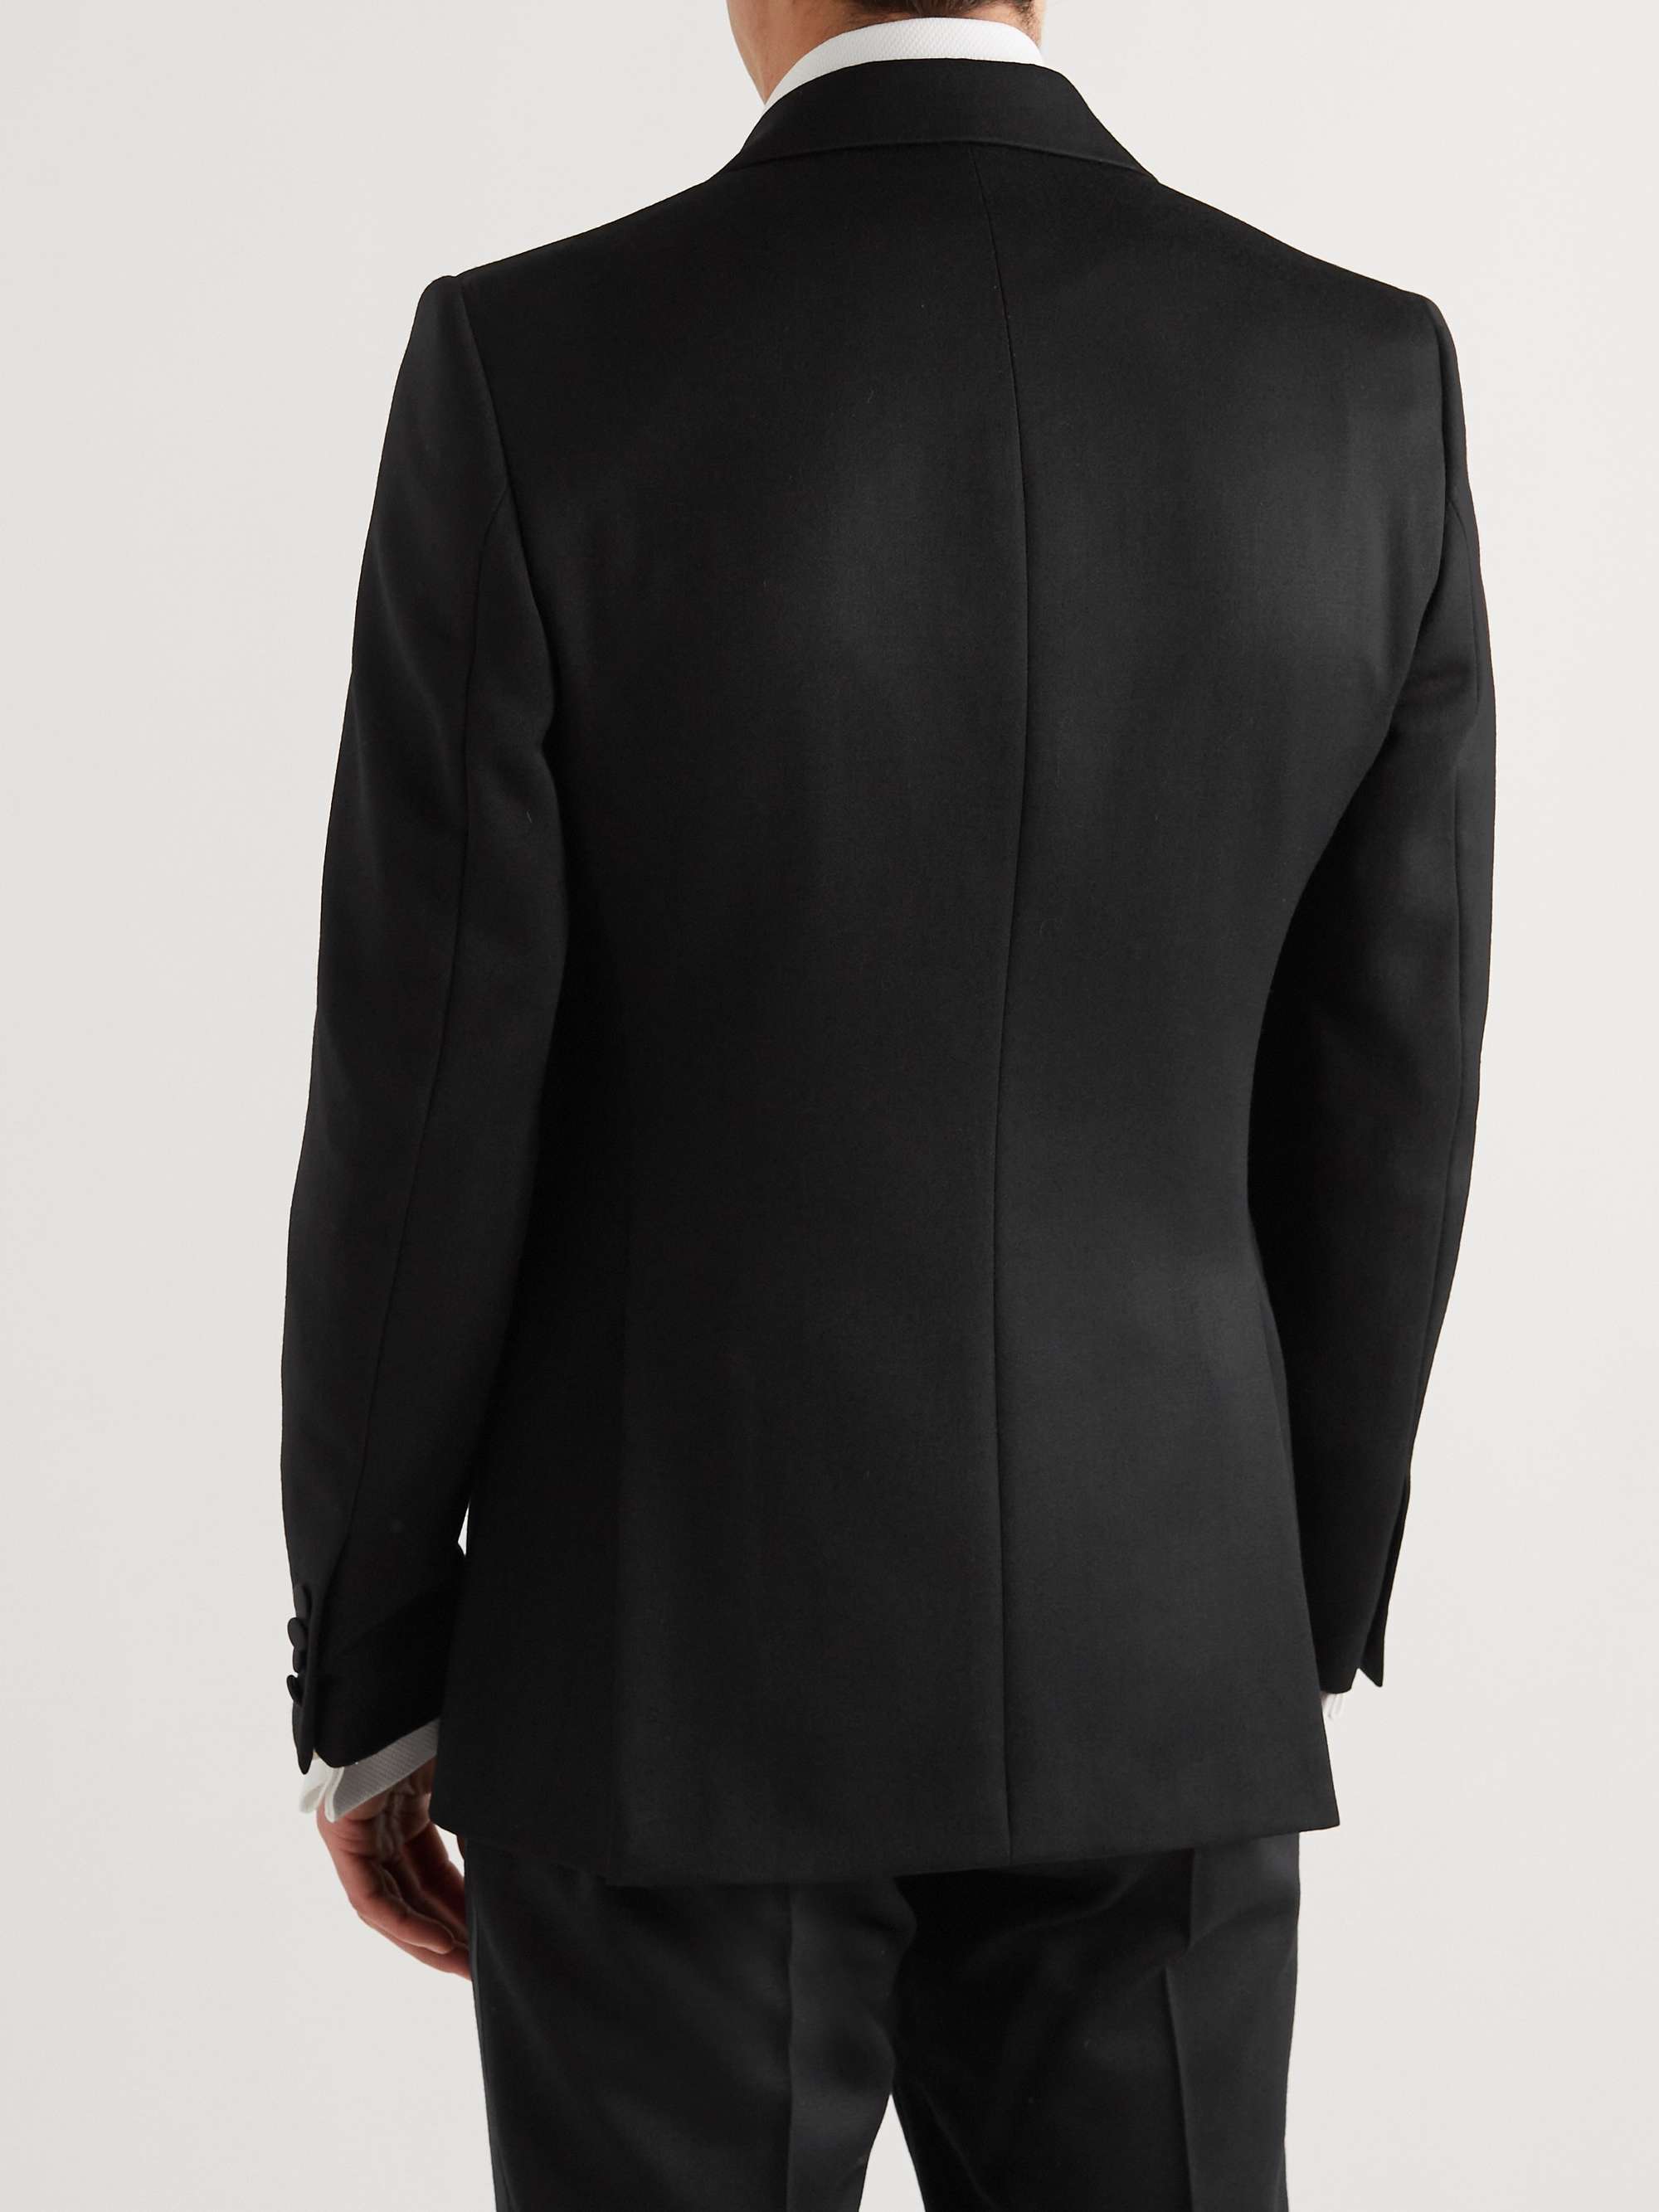 FAVOURBROOK Slim-Fit Grosgrain-Trimmed Cotton-Velvet Tuxedo Jacket